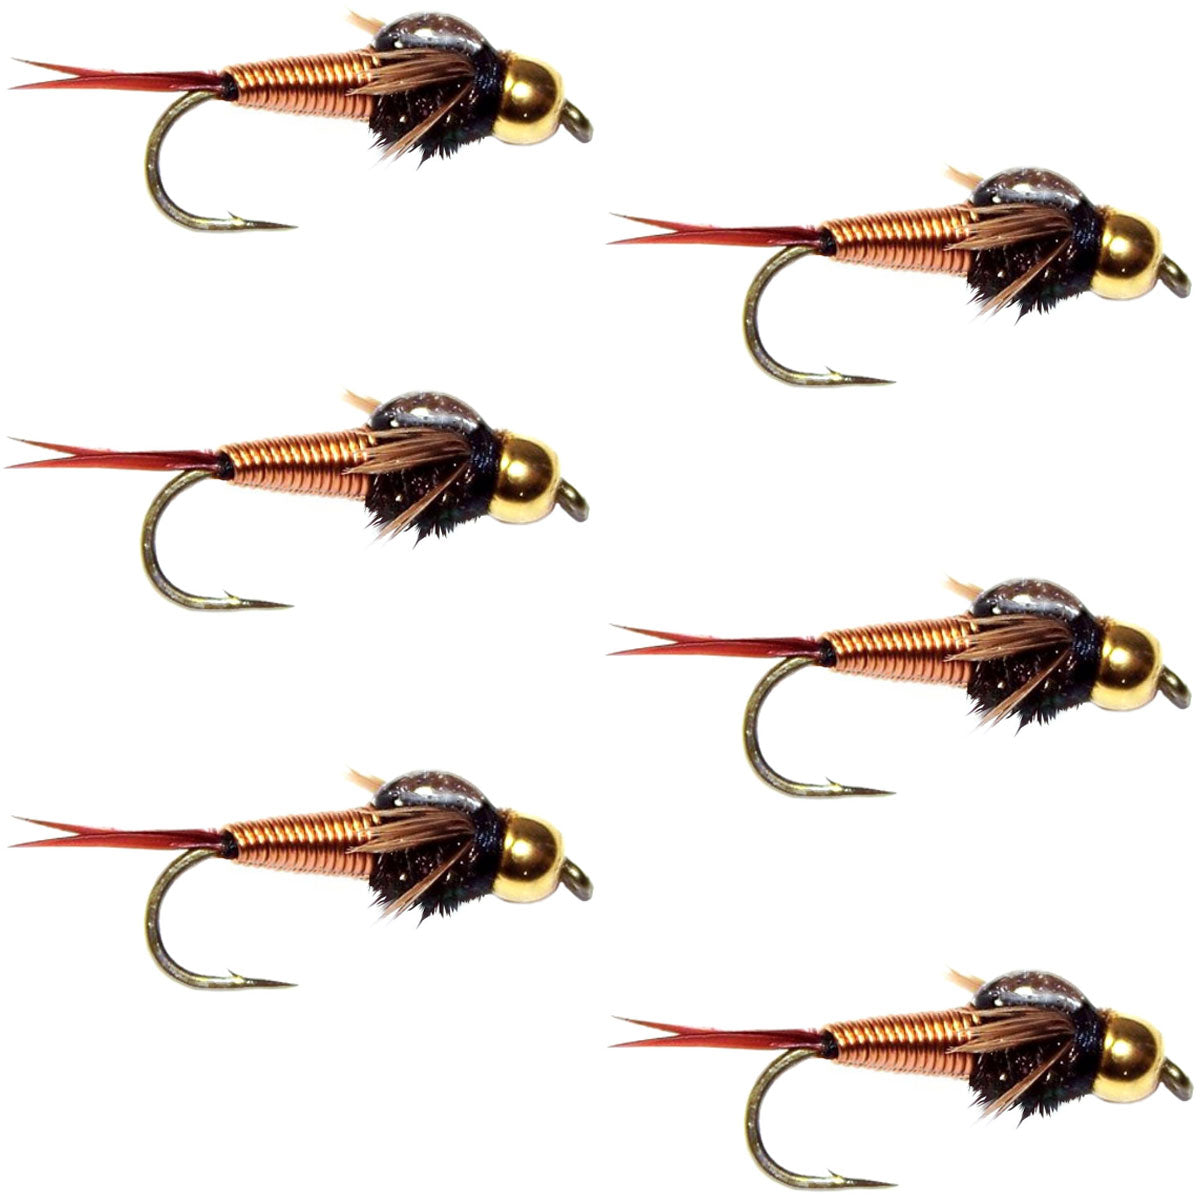 Bead Head Copper John Nymph Fly Fishing Flies - Set of 6 Flies Hook Size 12